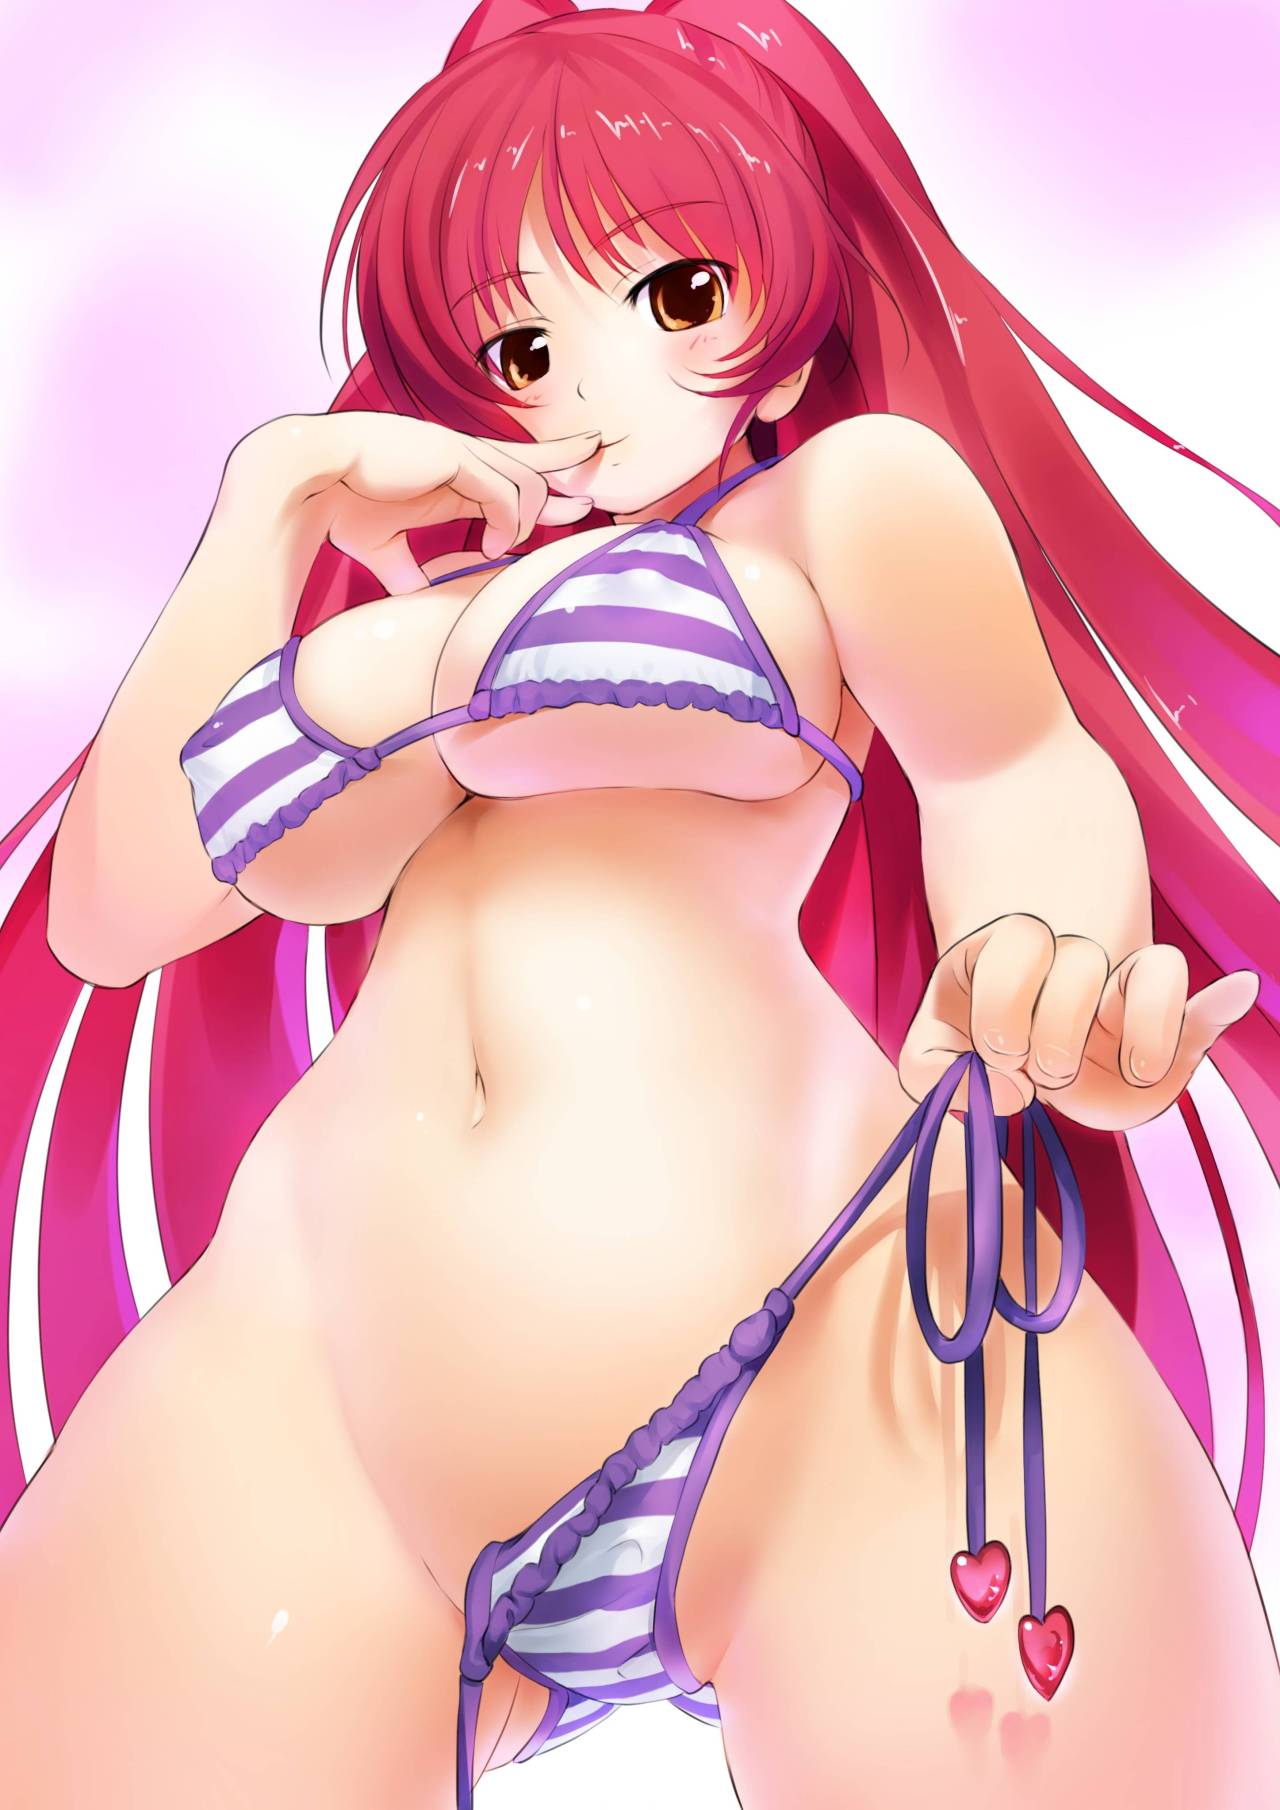 bikini girl in Sexy anime